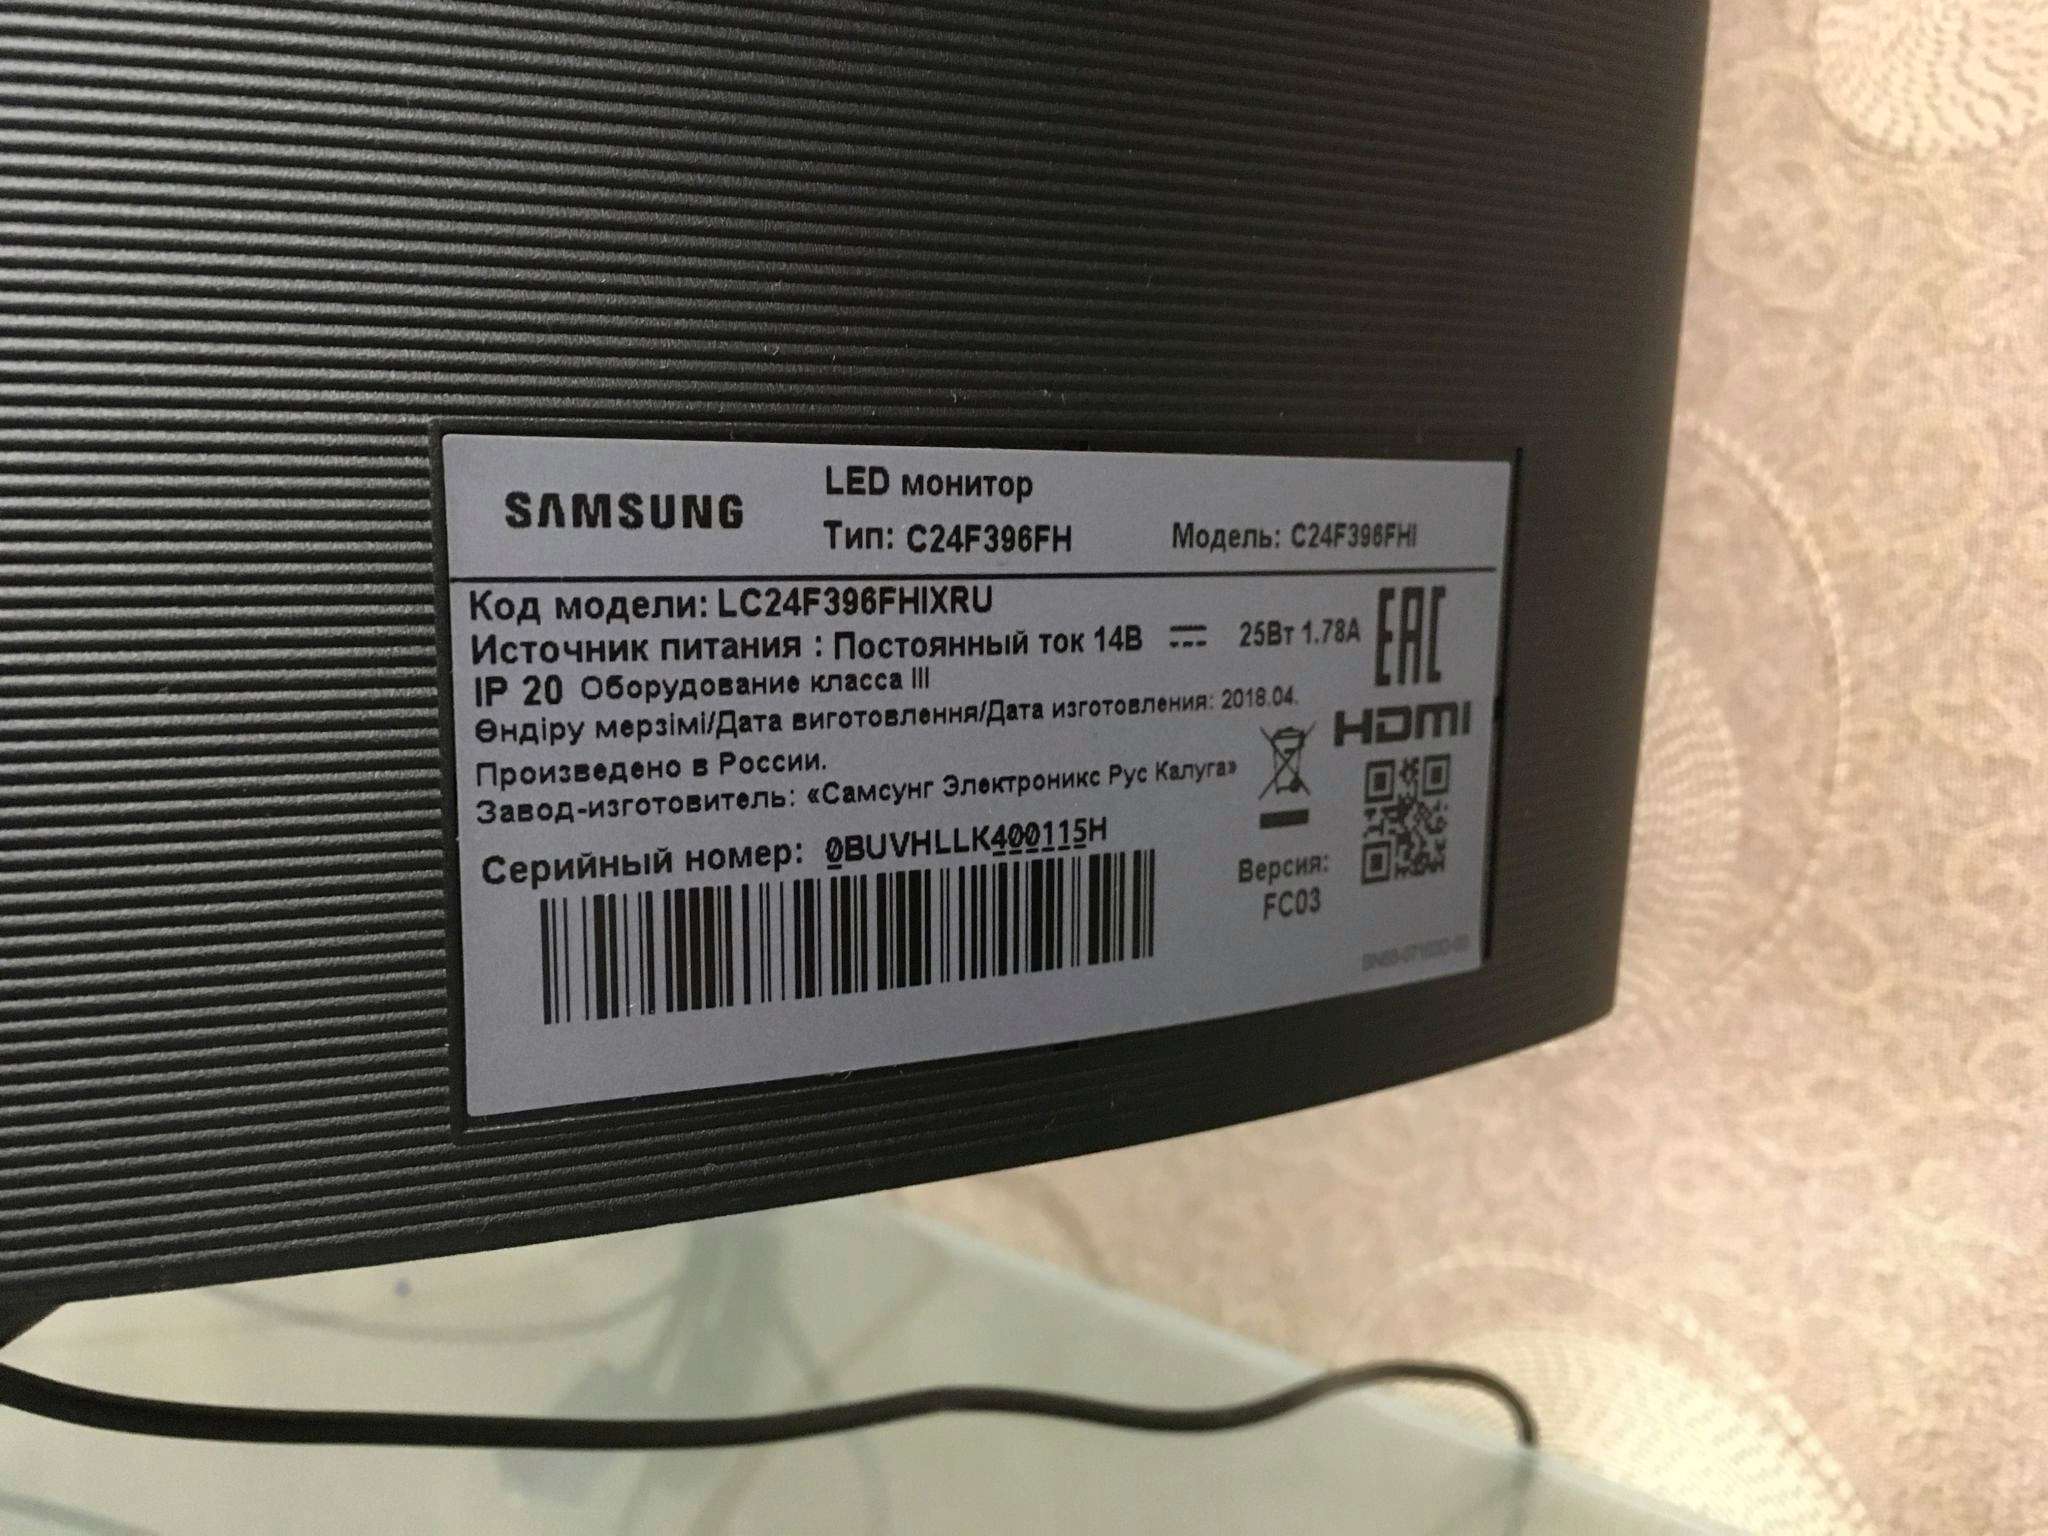 Монитор Samsung C24F396FHI, 23.5", Black.